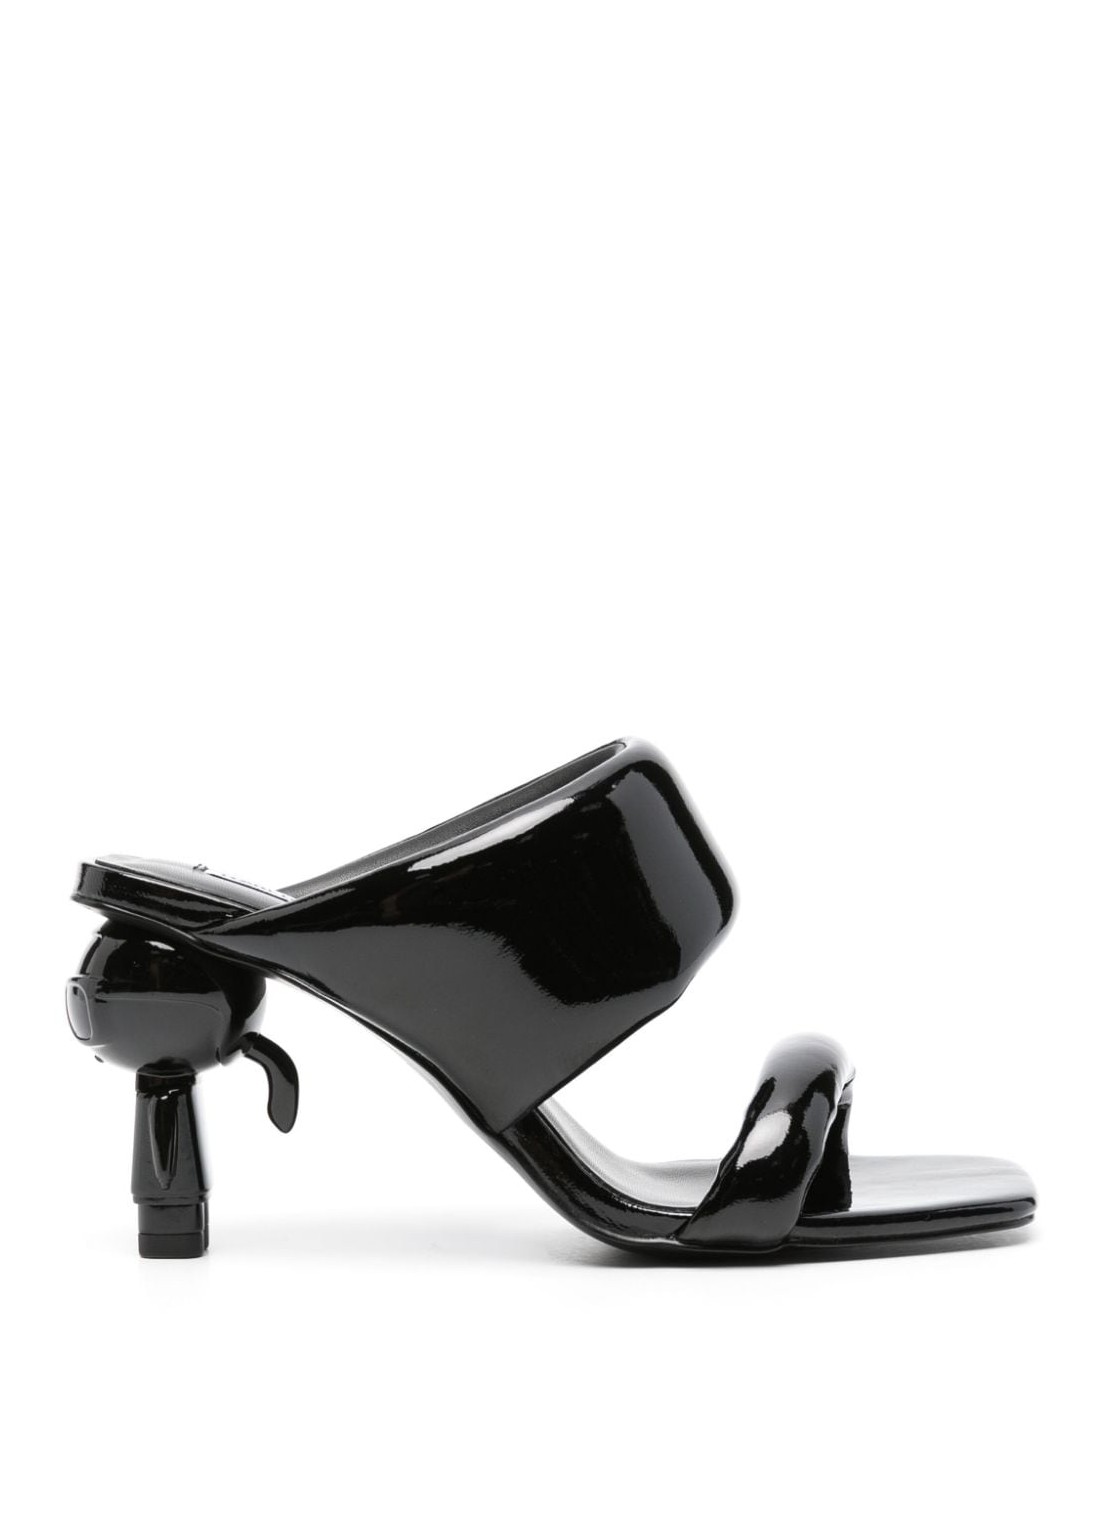 Sandalia karl lagerfeld sandal woman ikon heel padded 2-strap kl39005a 00x talla negro
 